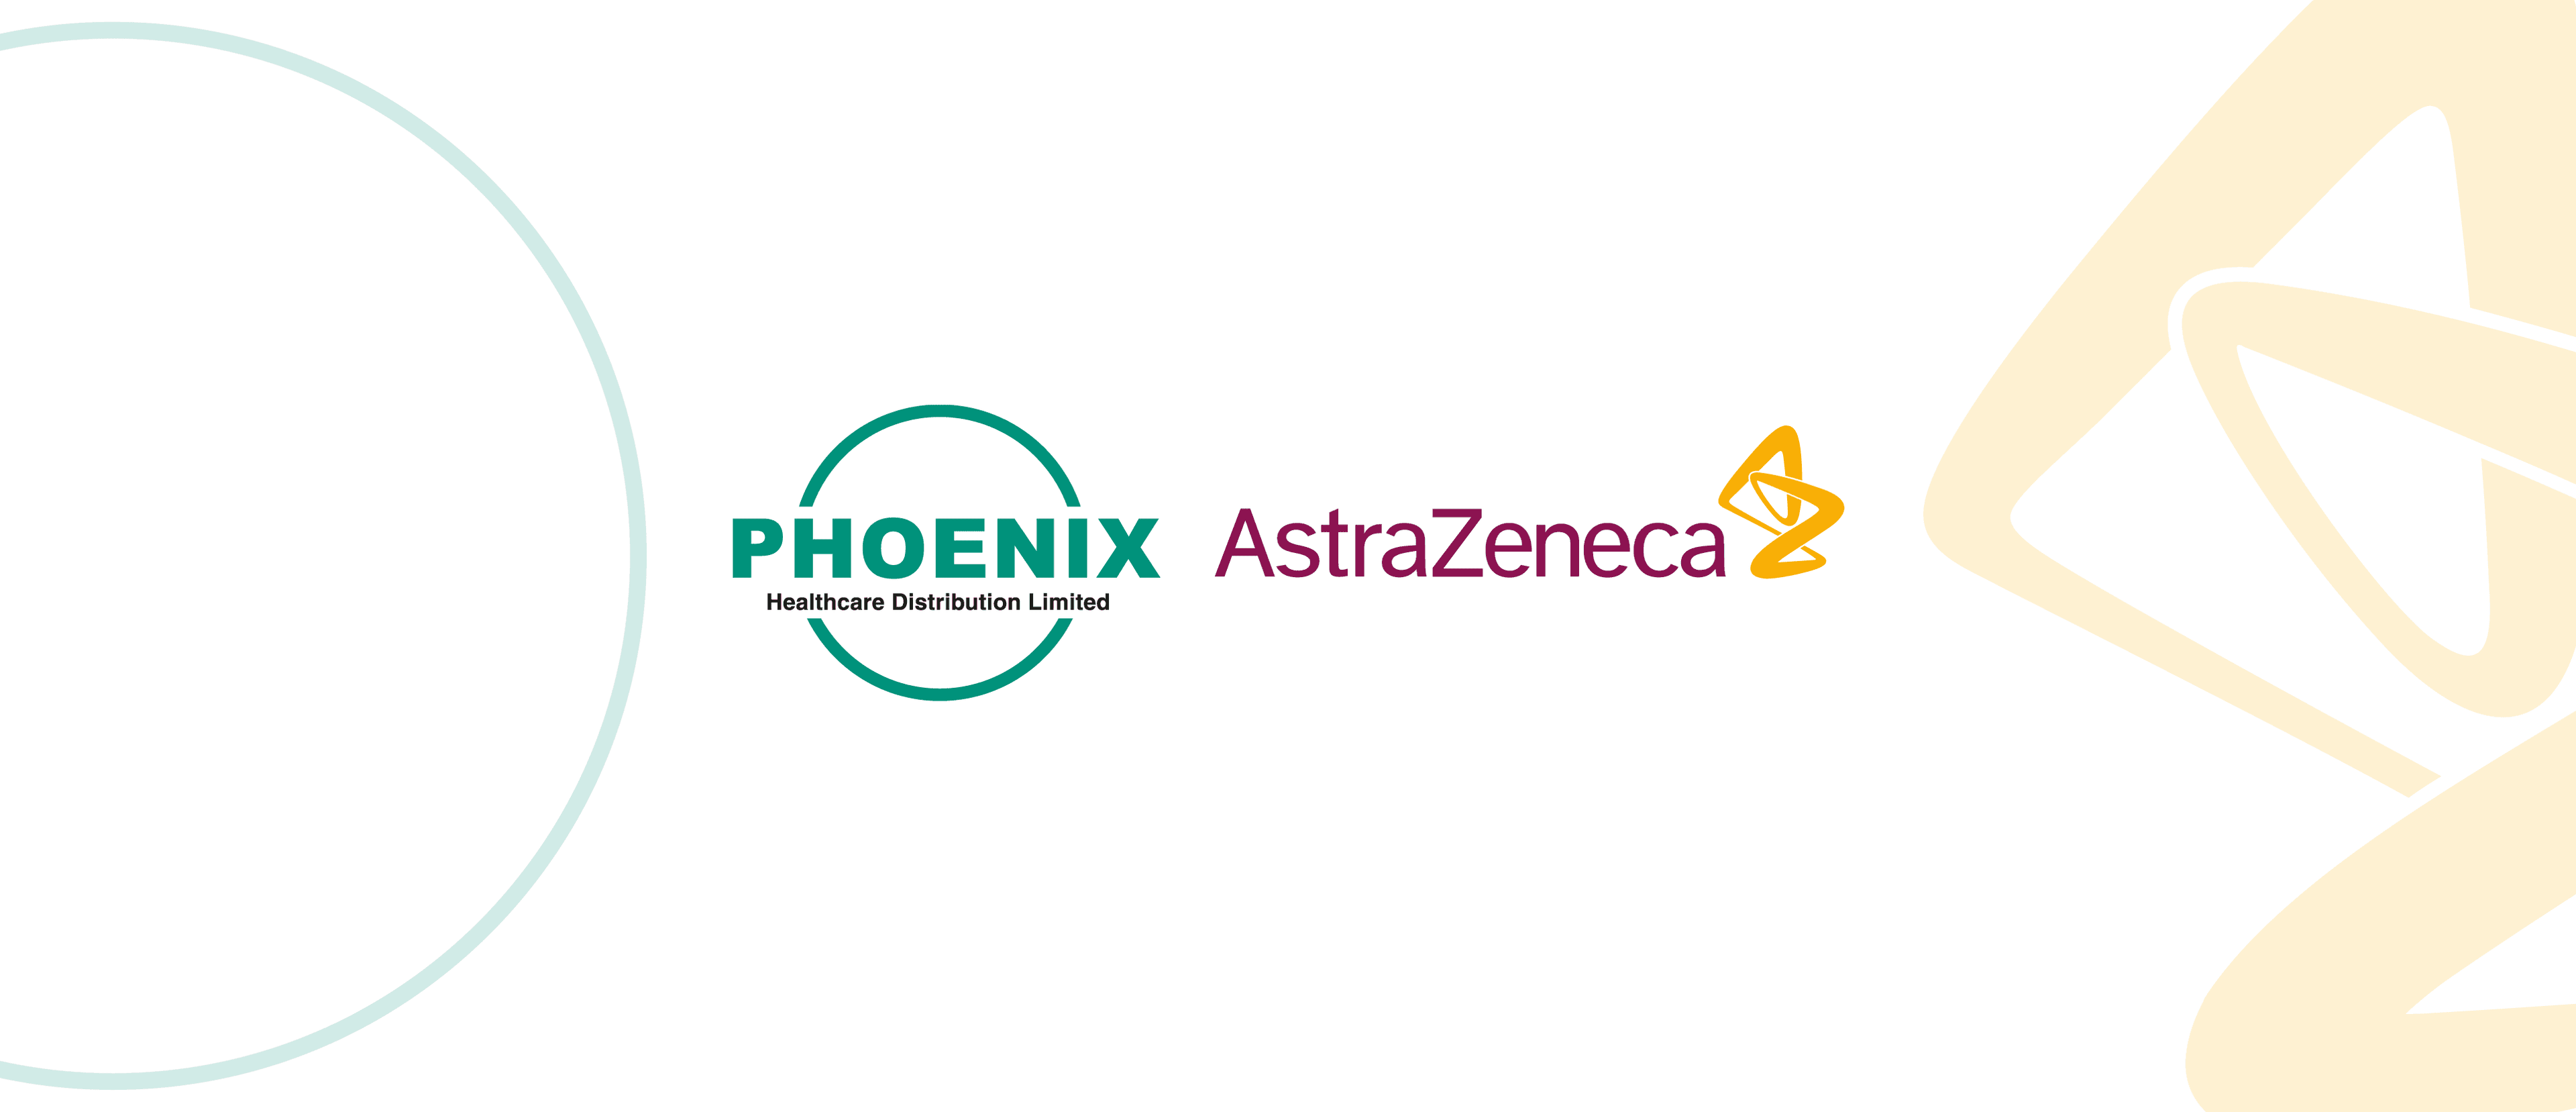 PHOENIX AstraZeneca